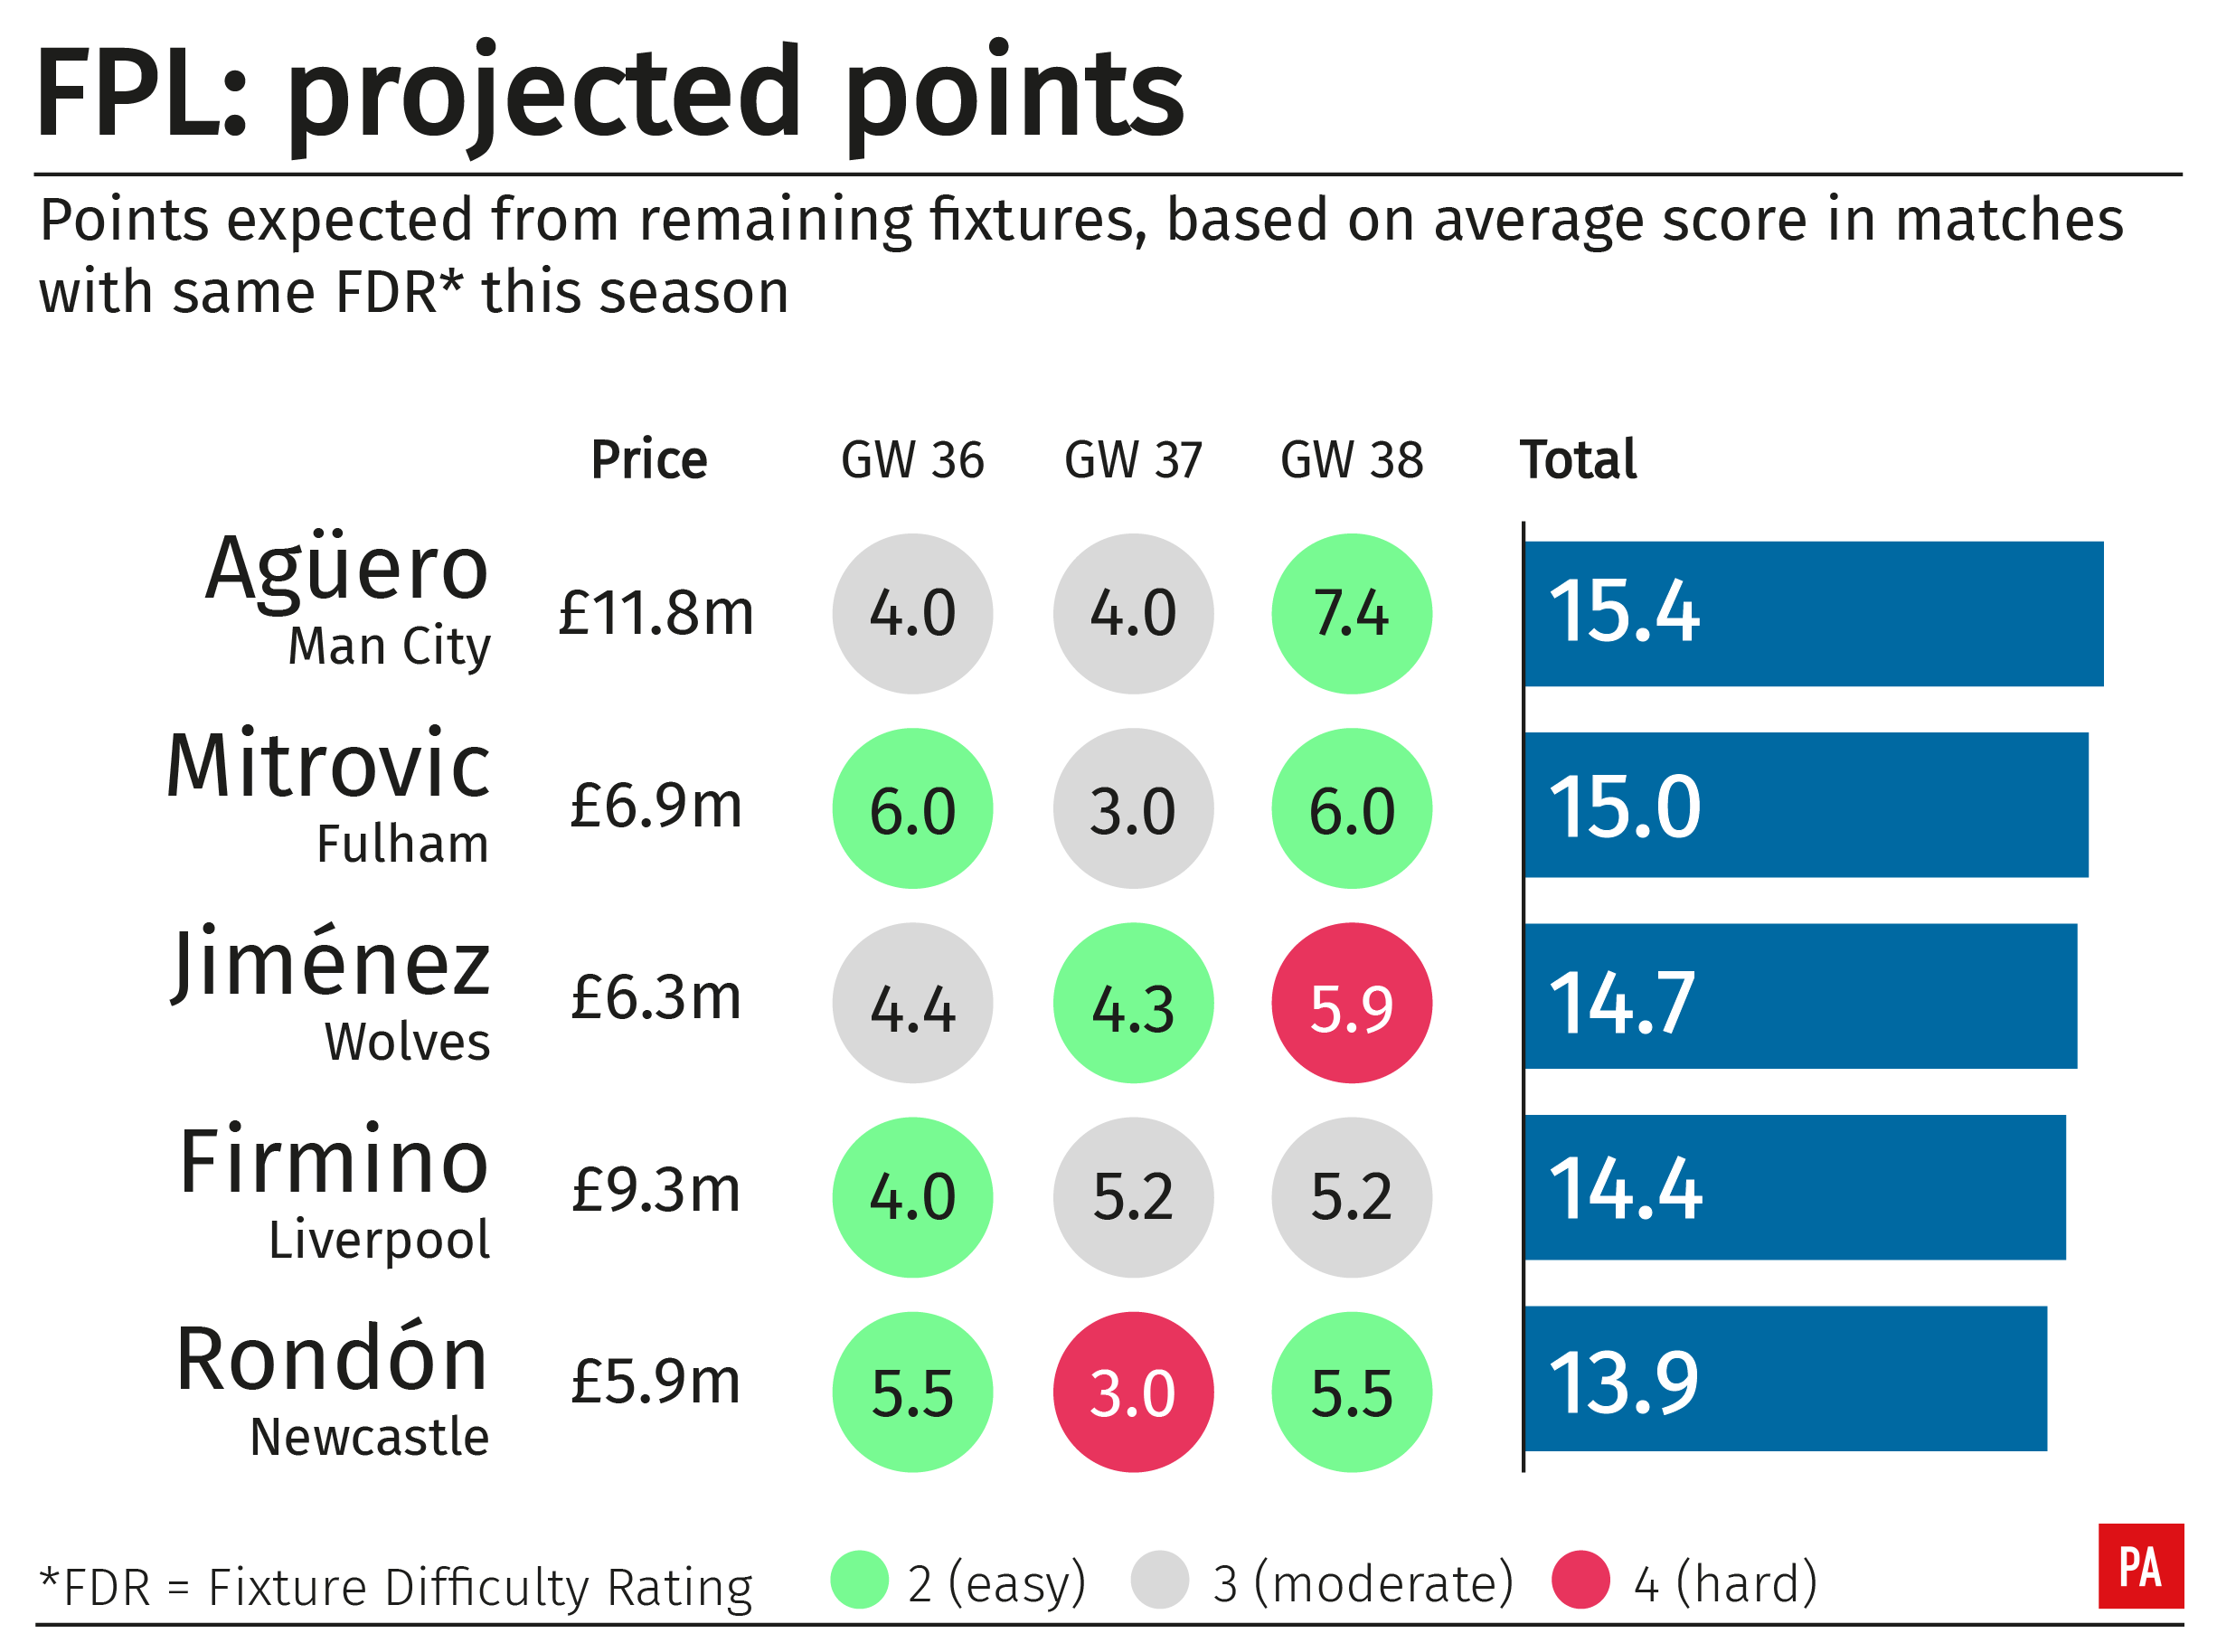 A graphic showing projected Fantasy Premier League points for Premier League strikers